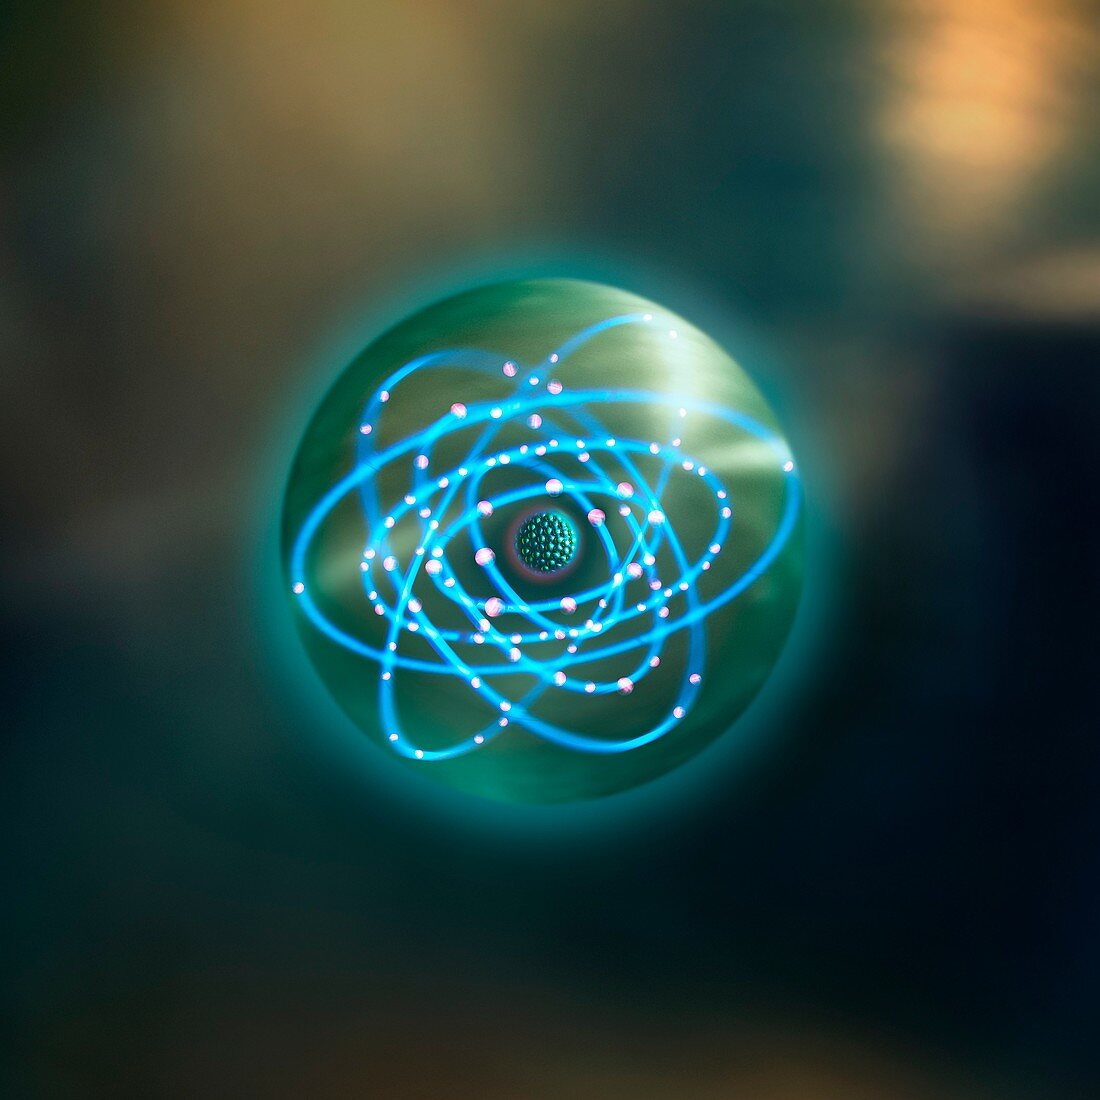 Thorium atom,conceptual image